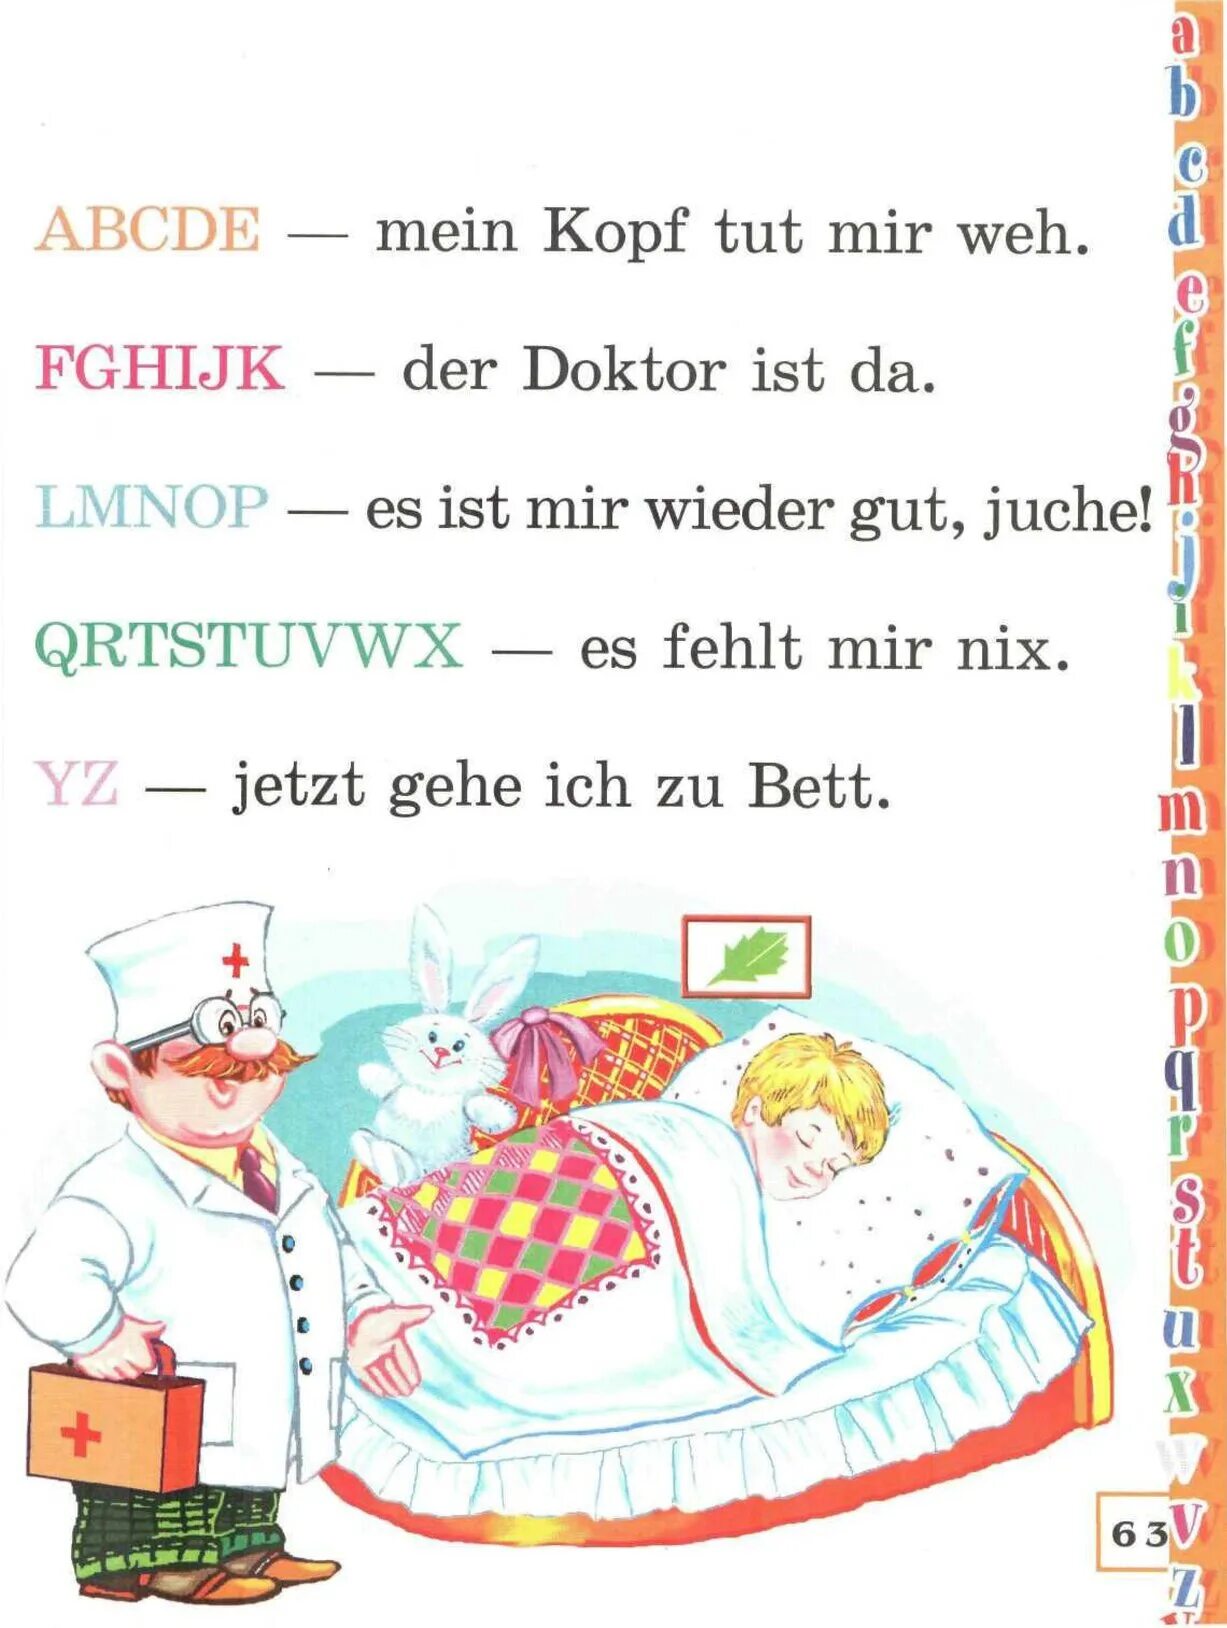 Tut weh. Немецкий букварь. Немецкий букварь для детей. Kopf на немецком языке. Tut немецкий.